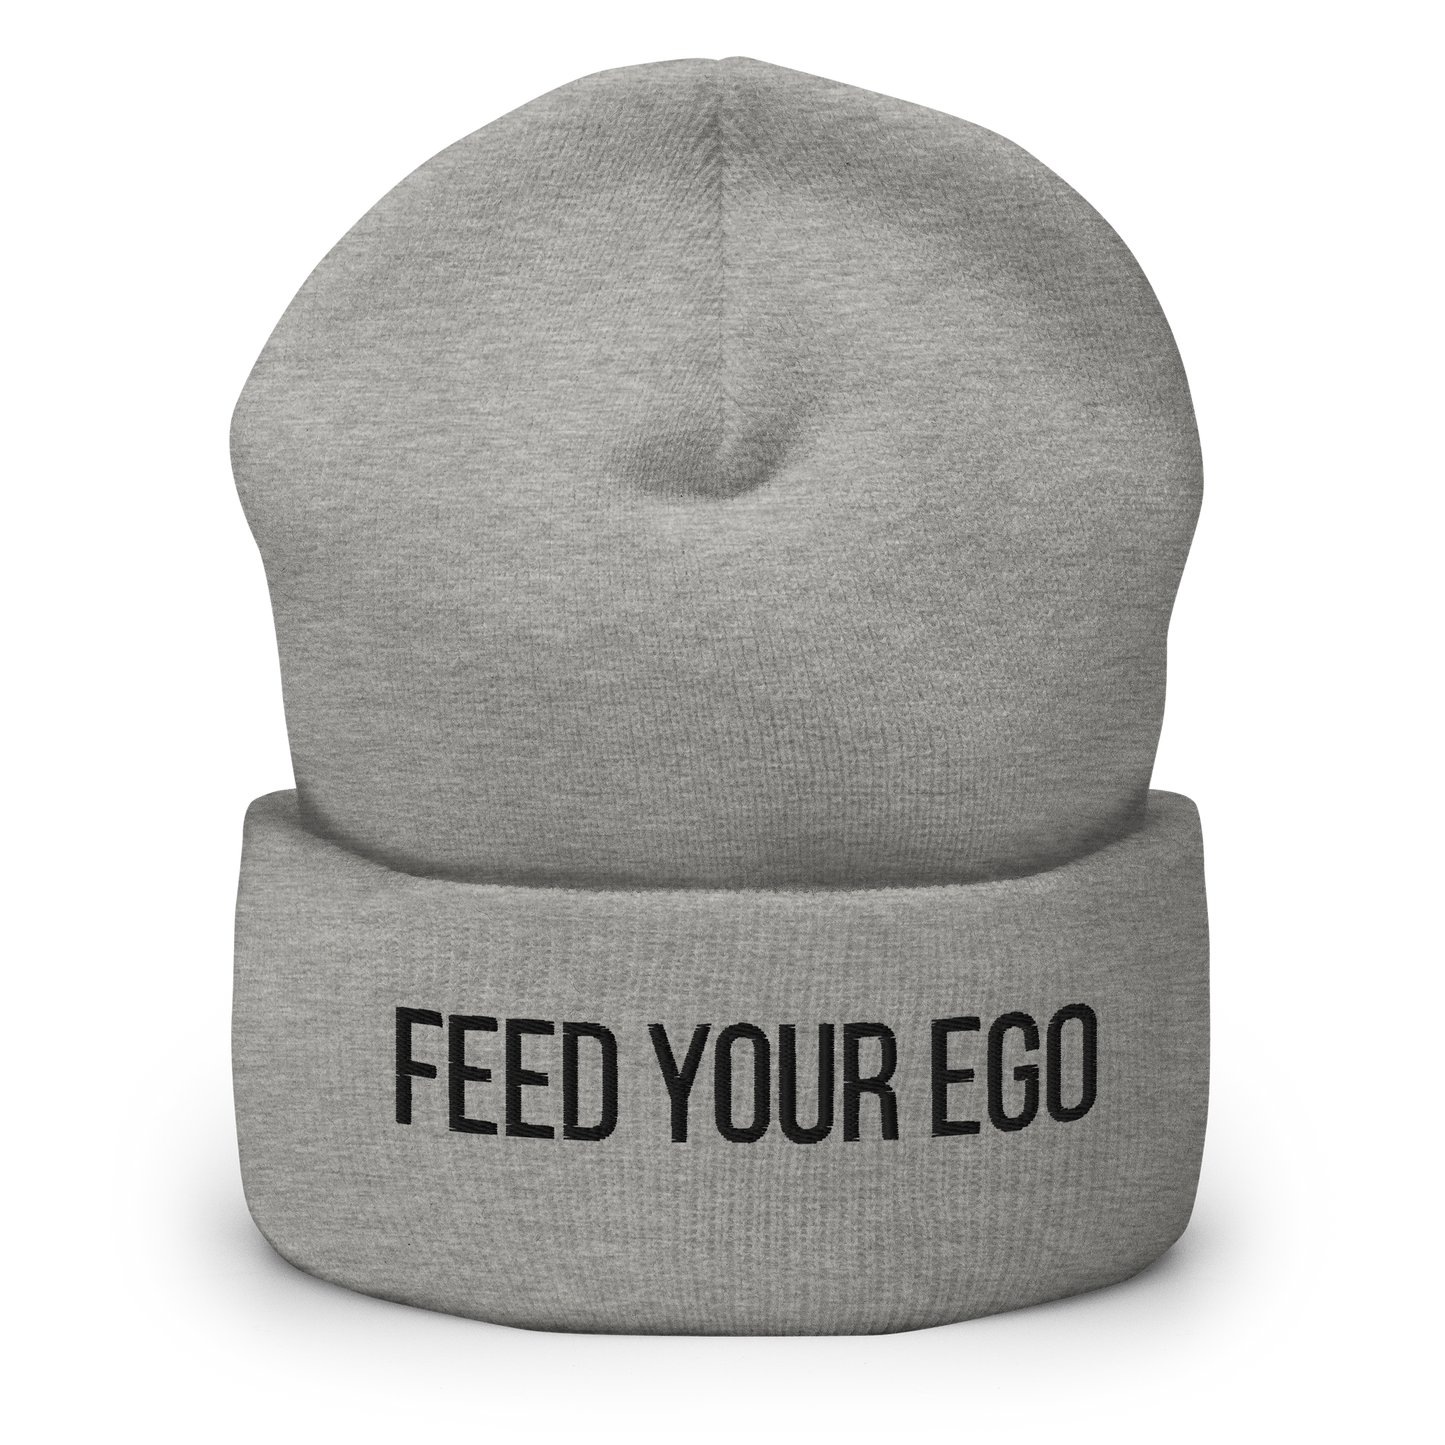 Feed Your Ego Grey Beanie